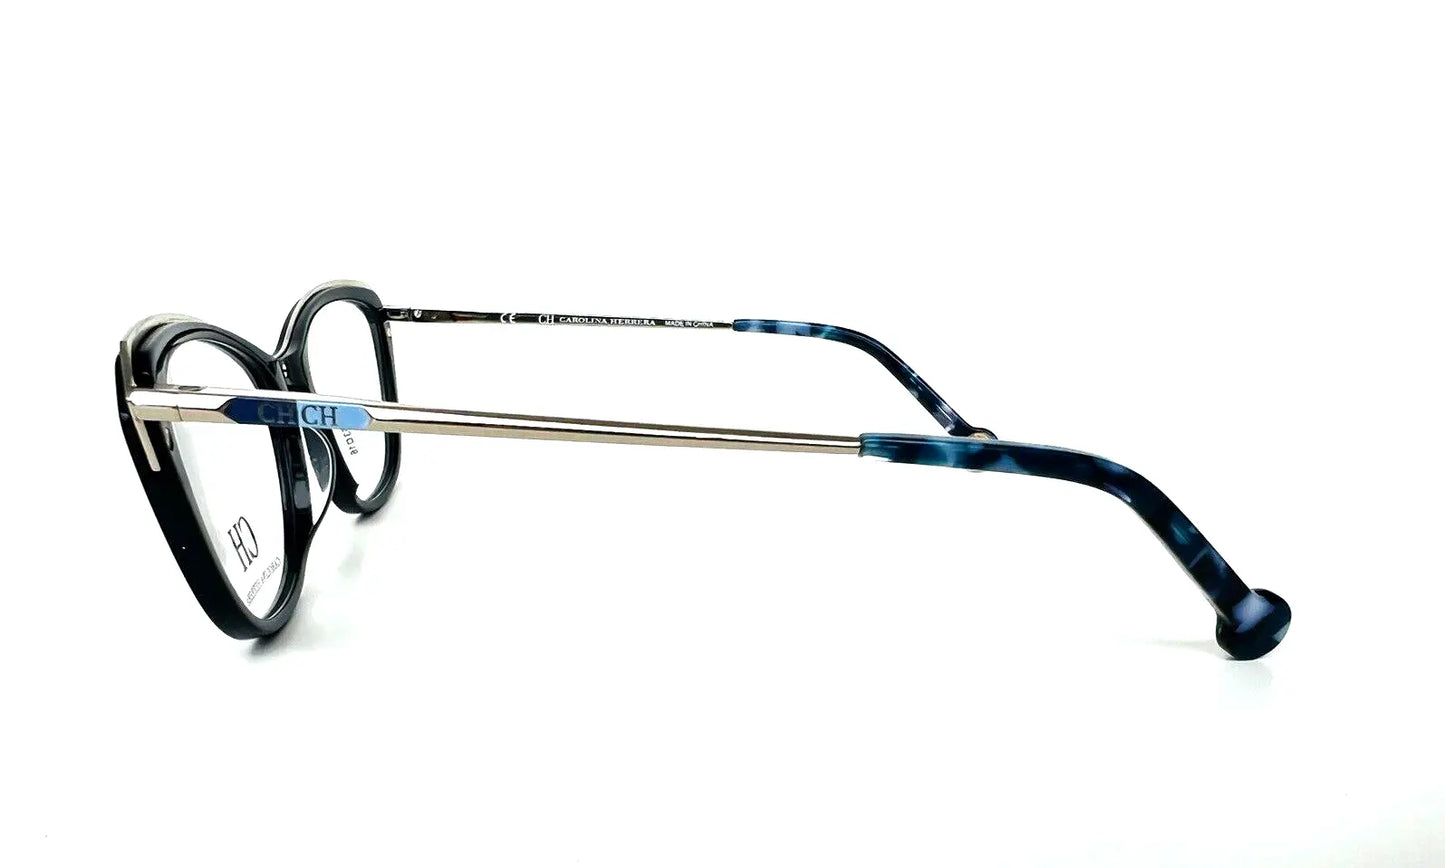 Carolina Herrera VHE854K-09AG-53 53mm New Eyeglasses